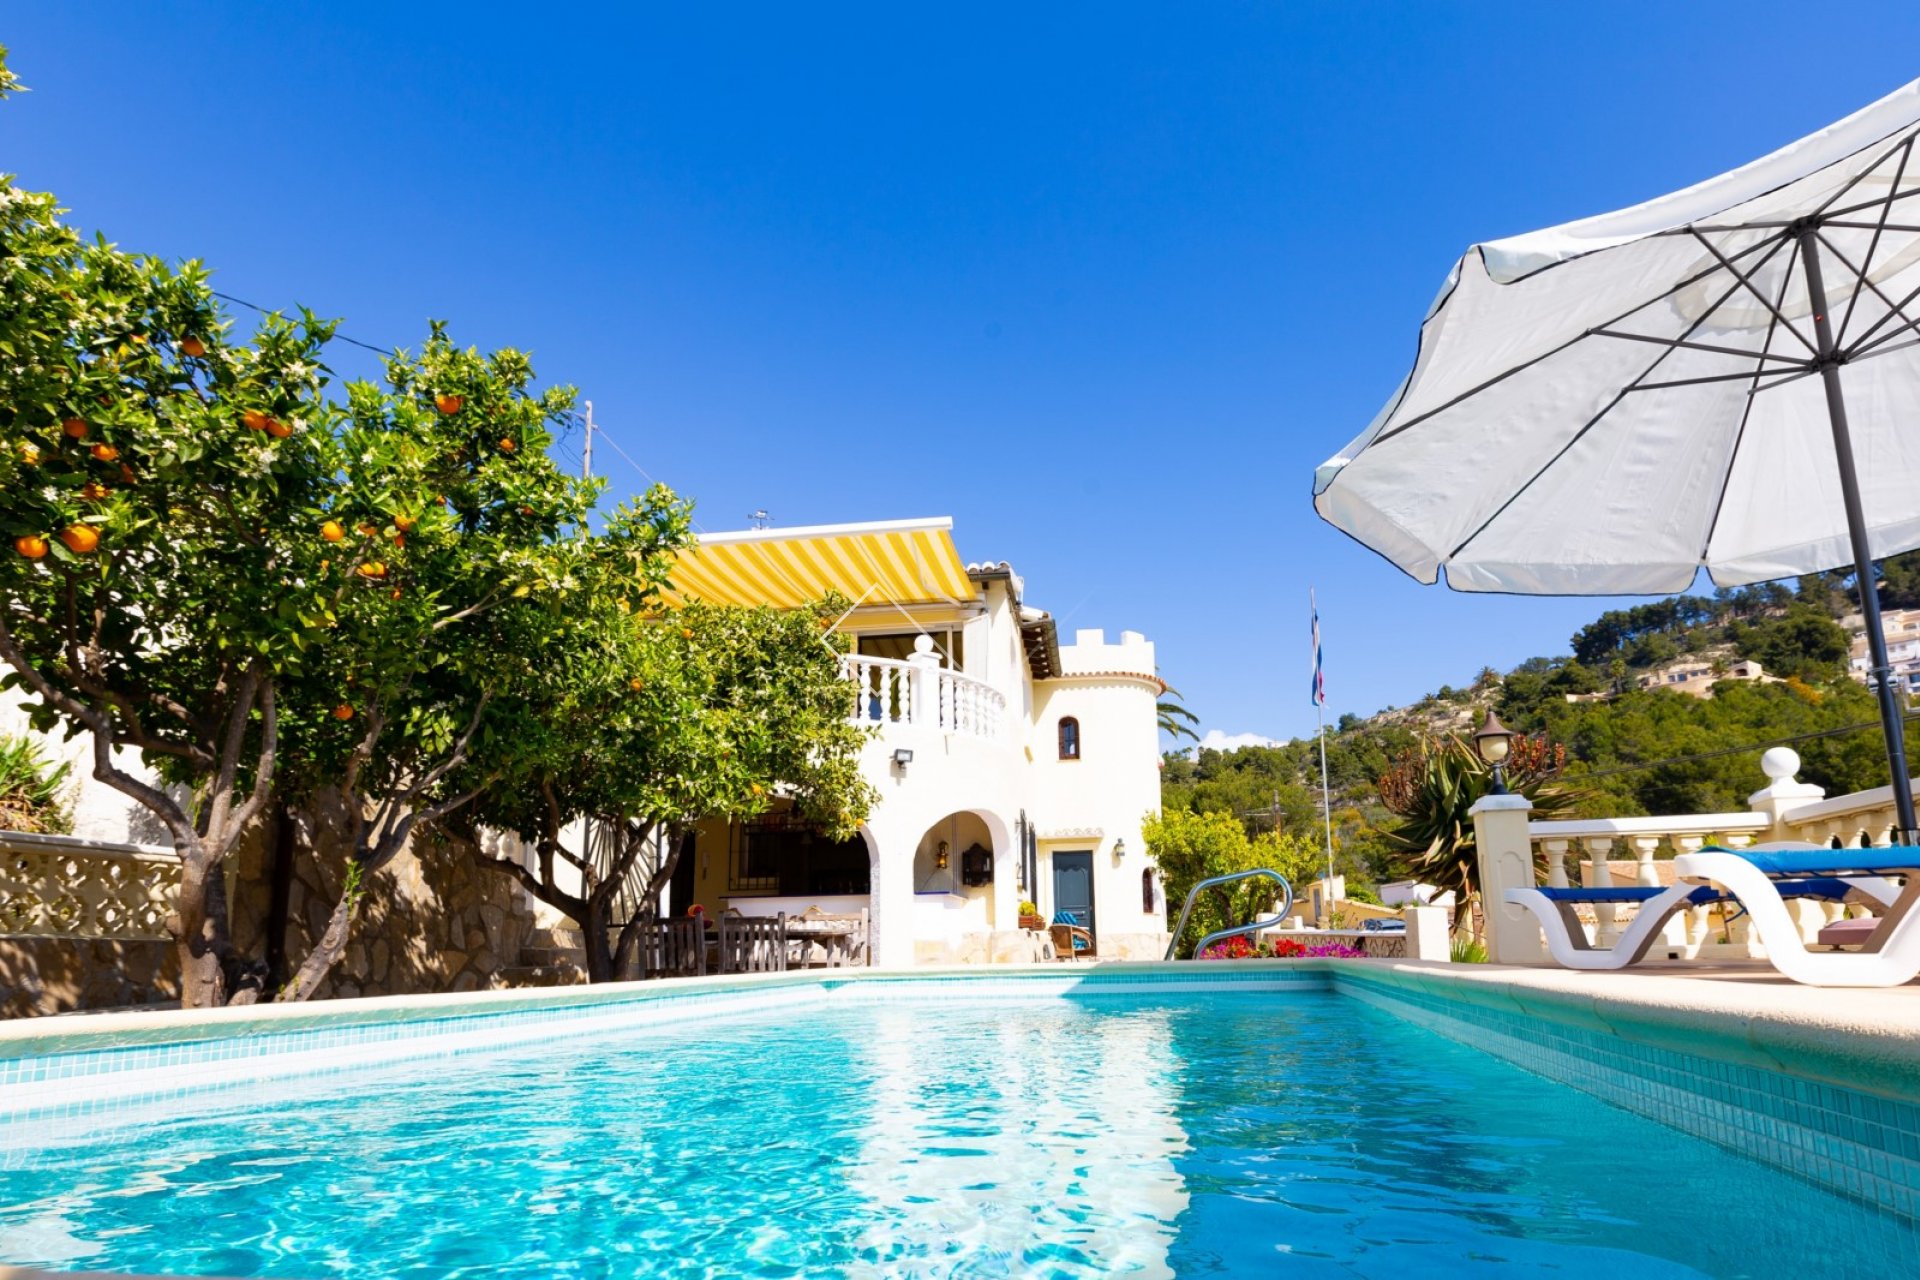 piscina en verano - Villa única con capilla original en Montemar, Benissa